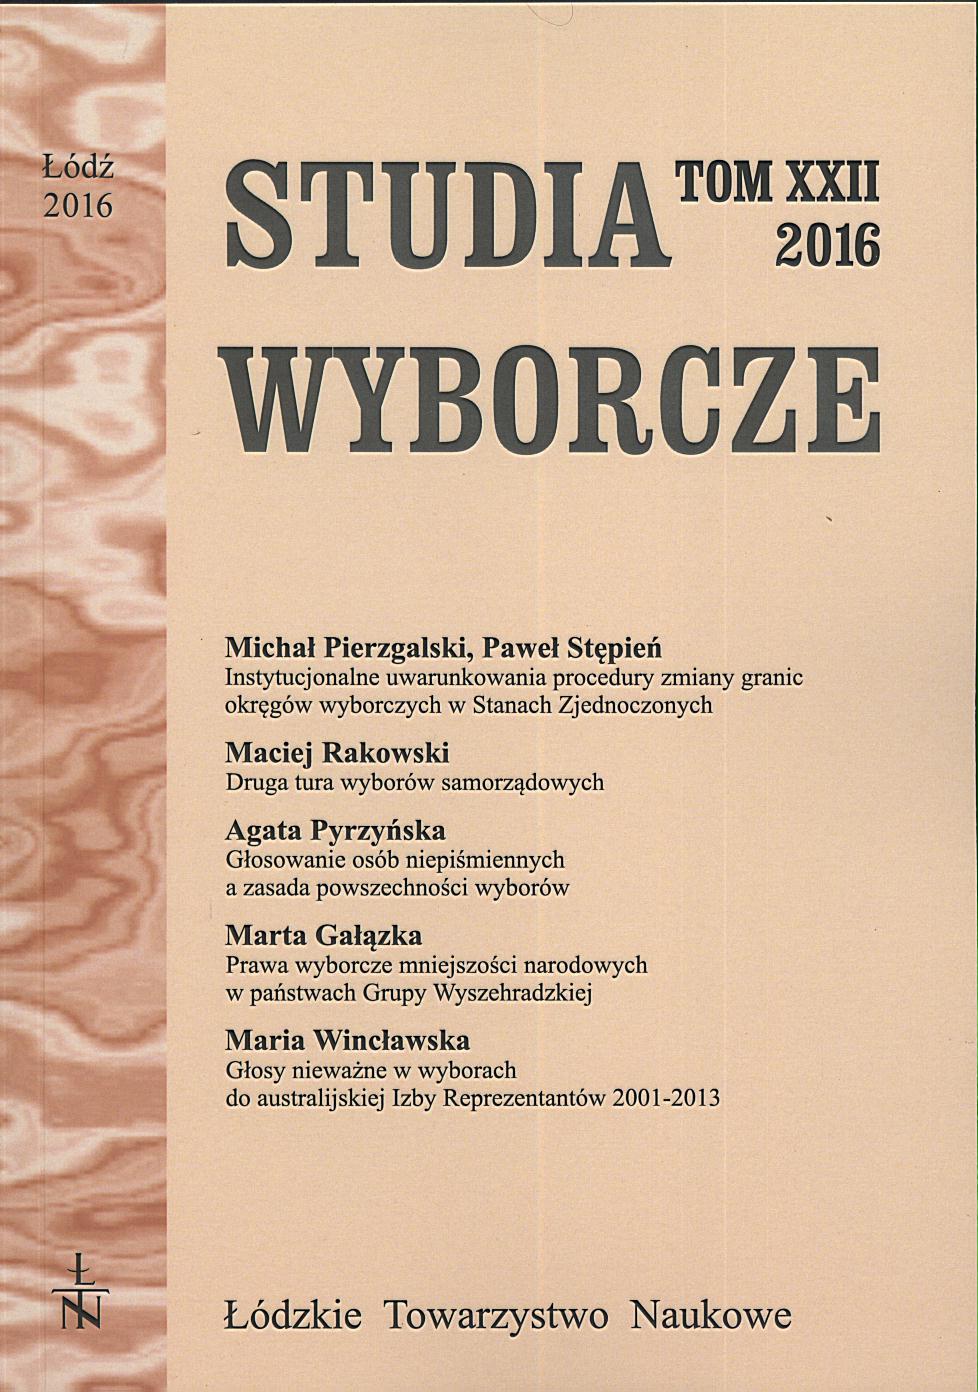 Polska bibliografia wyborczo-referendalna za 2015 rok